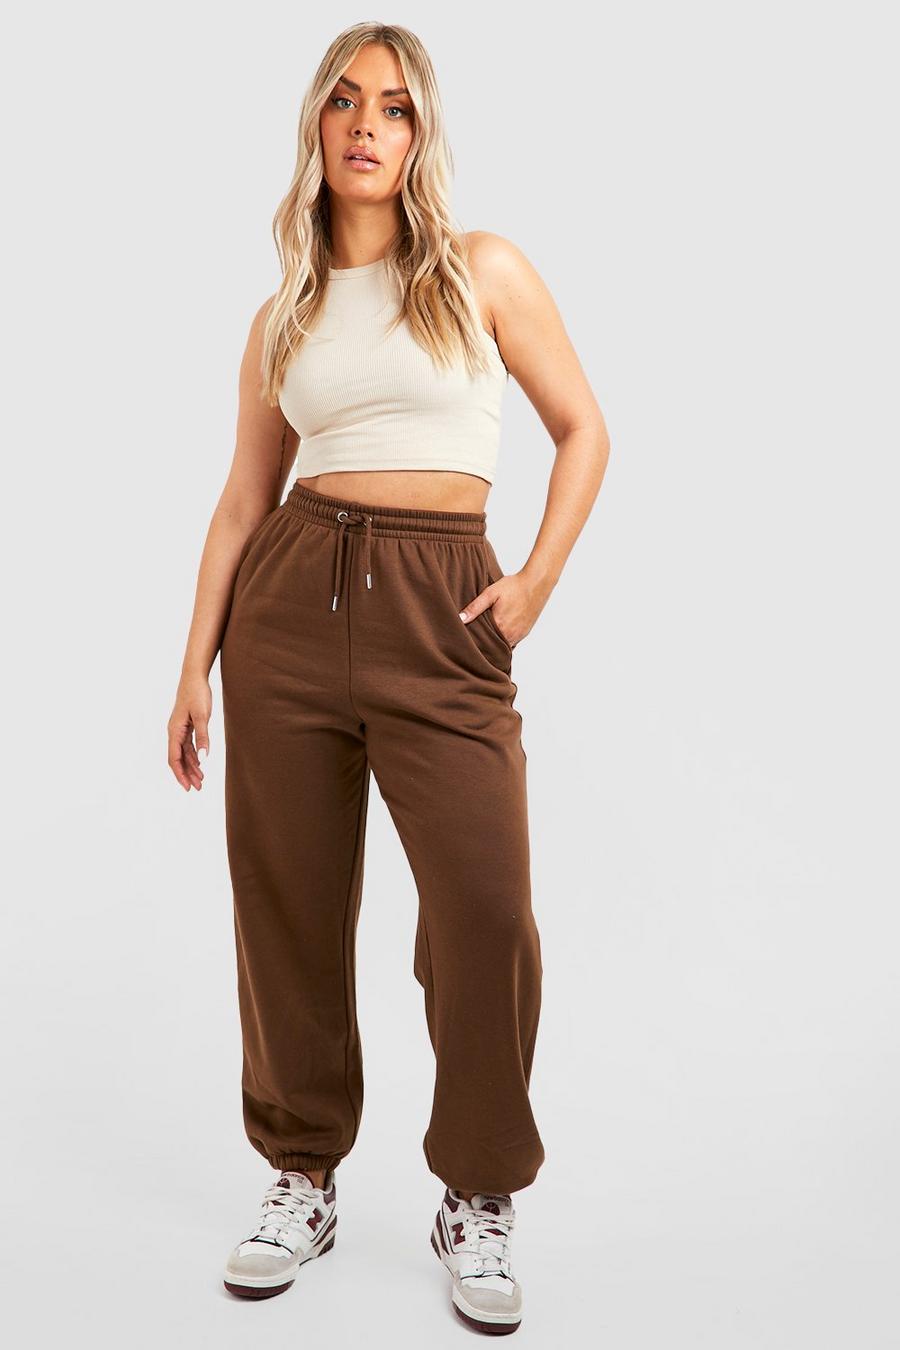 Pantaloni tuta Plus Size oversize Basic, Chocolate